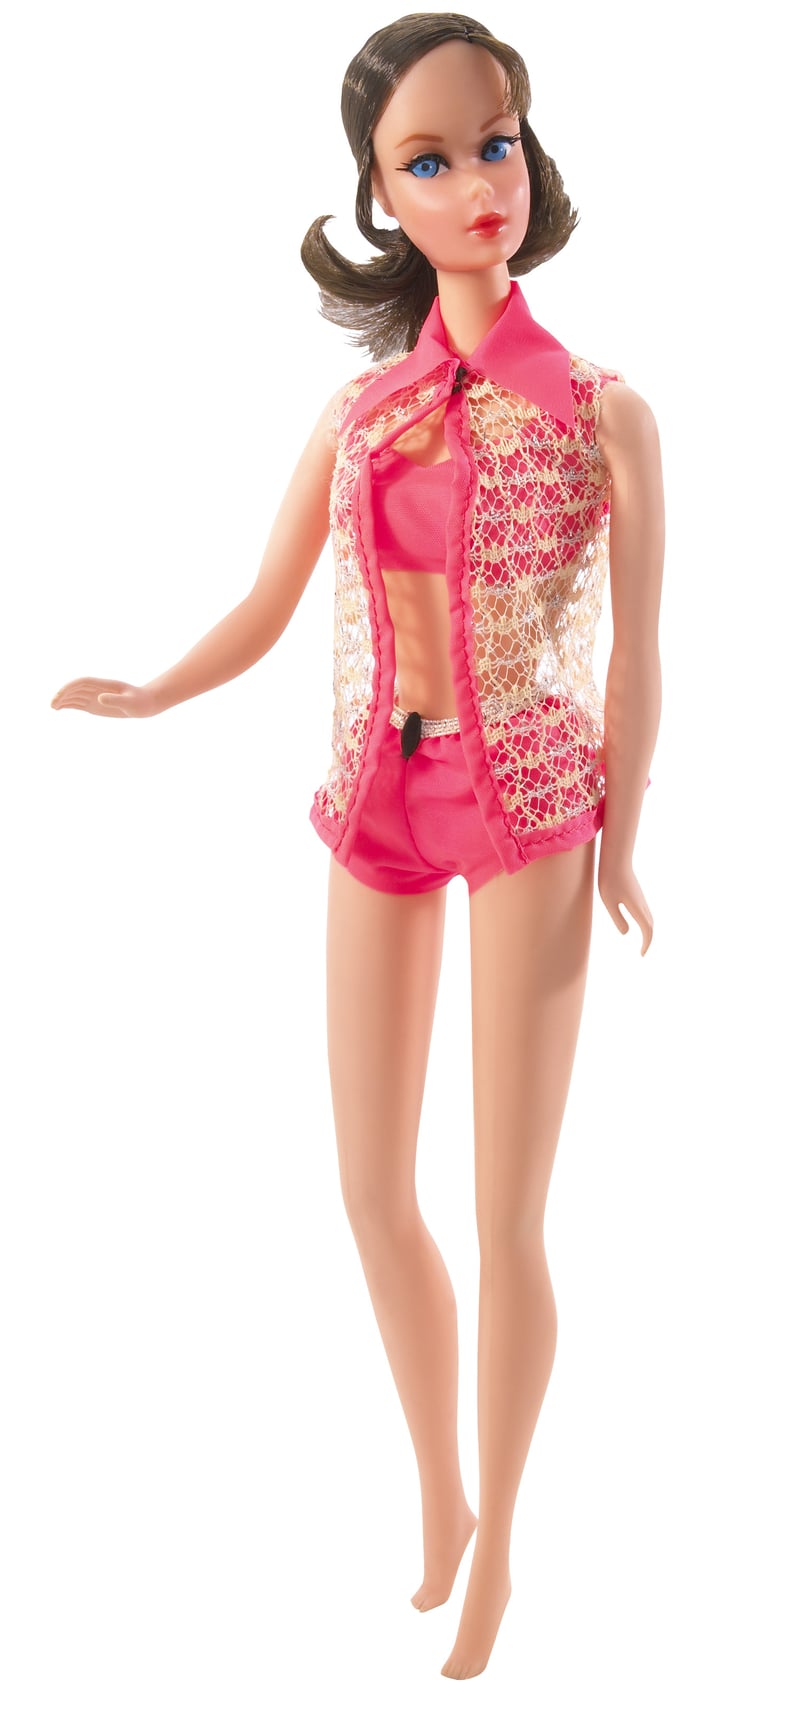 Barbie in 1968